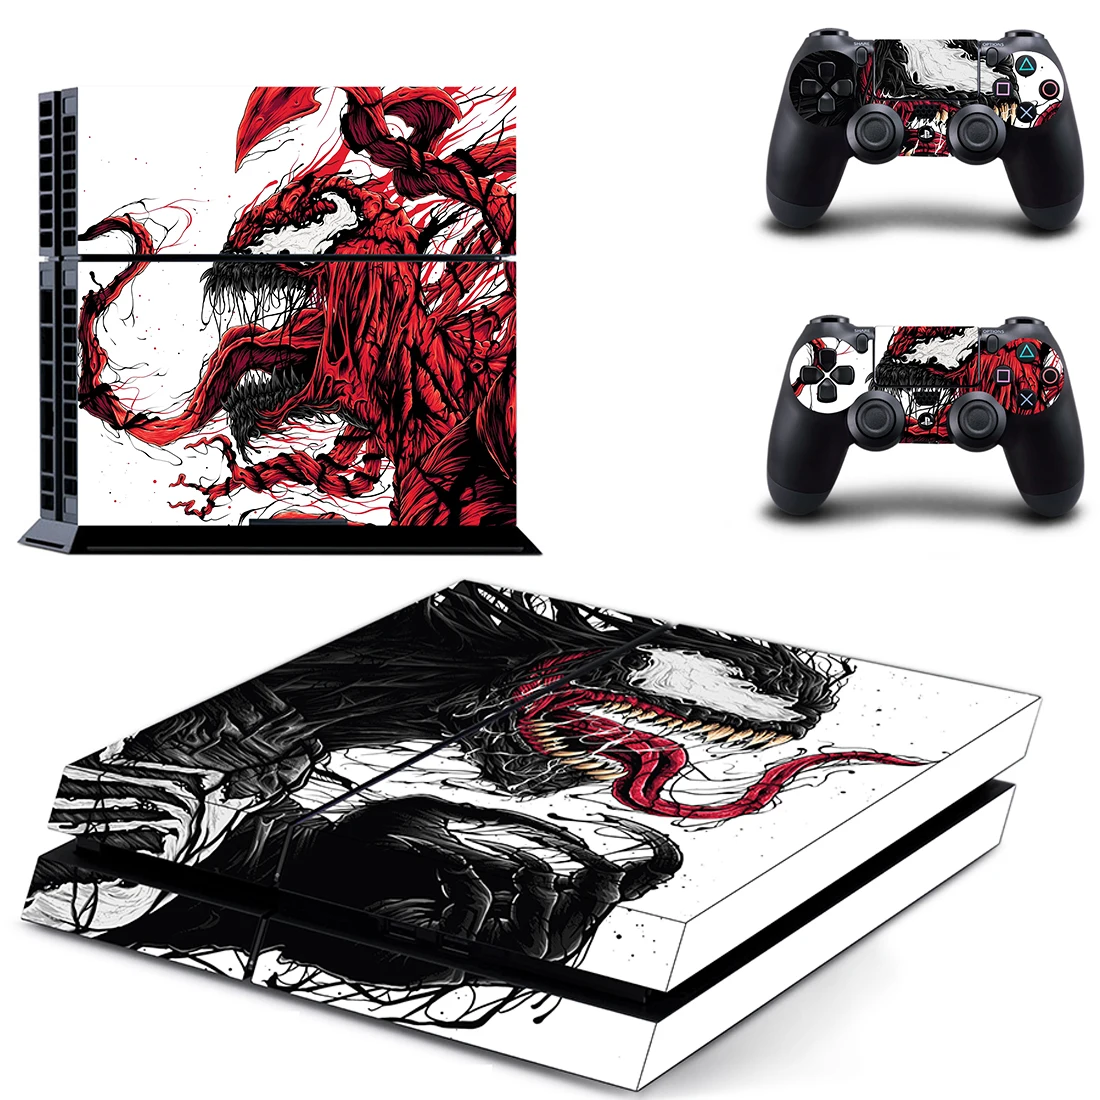 

Виниловые наклейки Venom Film PS4 s Play station 4, наклейки для консоли PlayStation 4 PS4 и контроллера